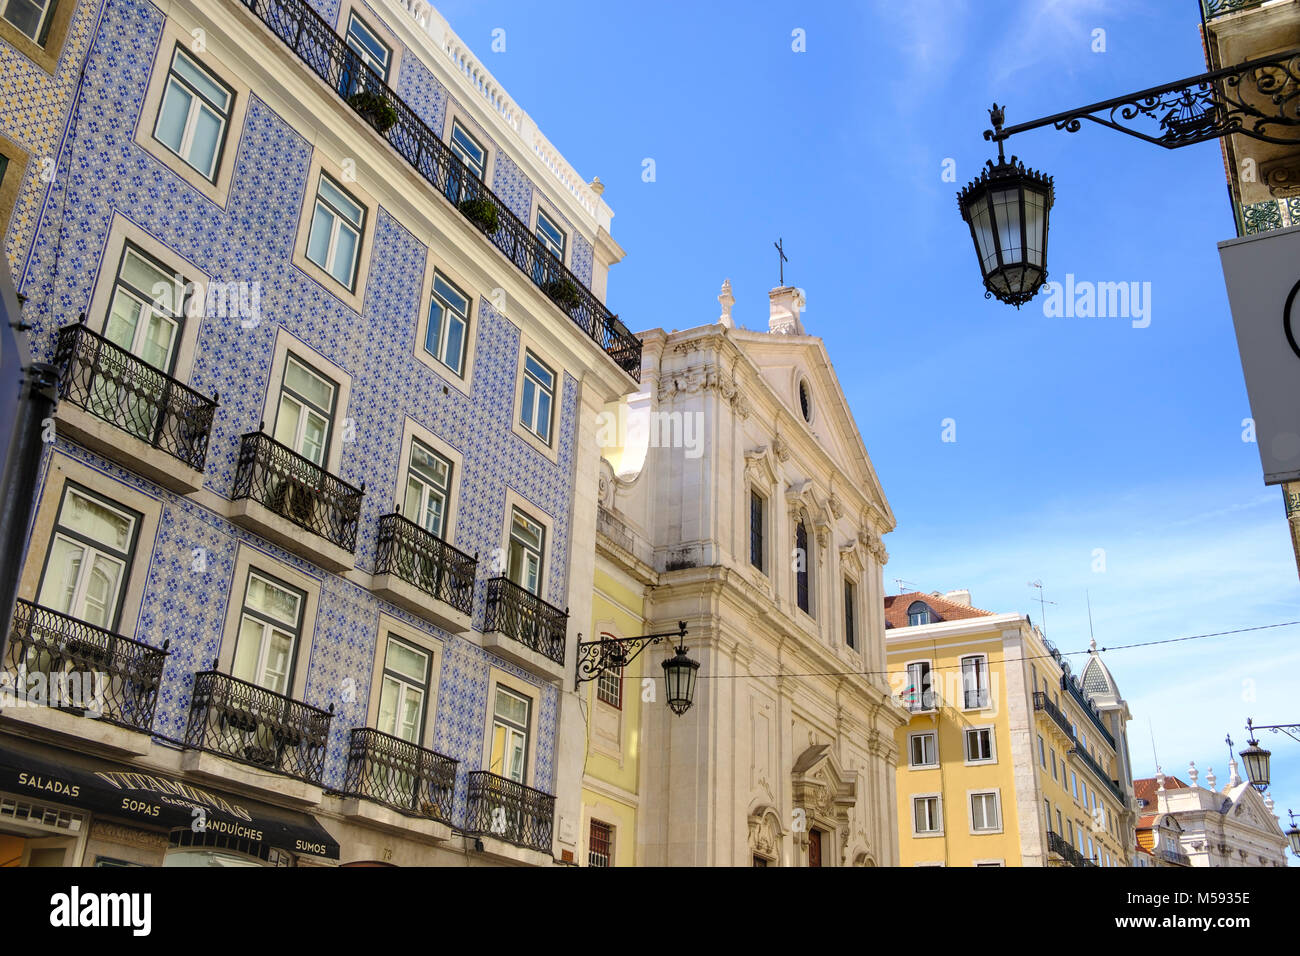 L'architecture et les rues du quartier du Chiado, Lisbonne, Portugal Banque D'Images